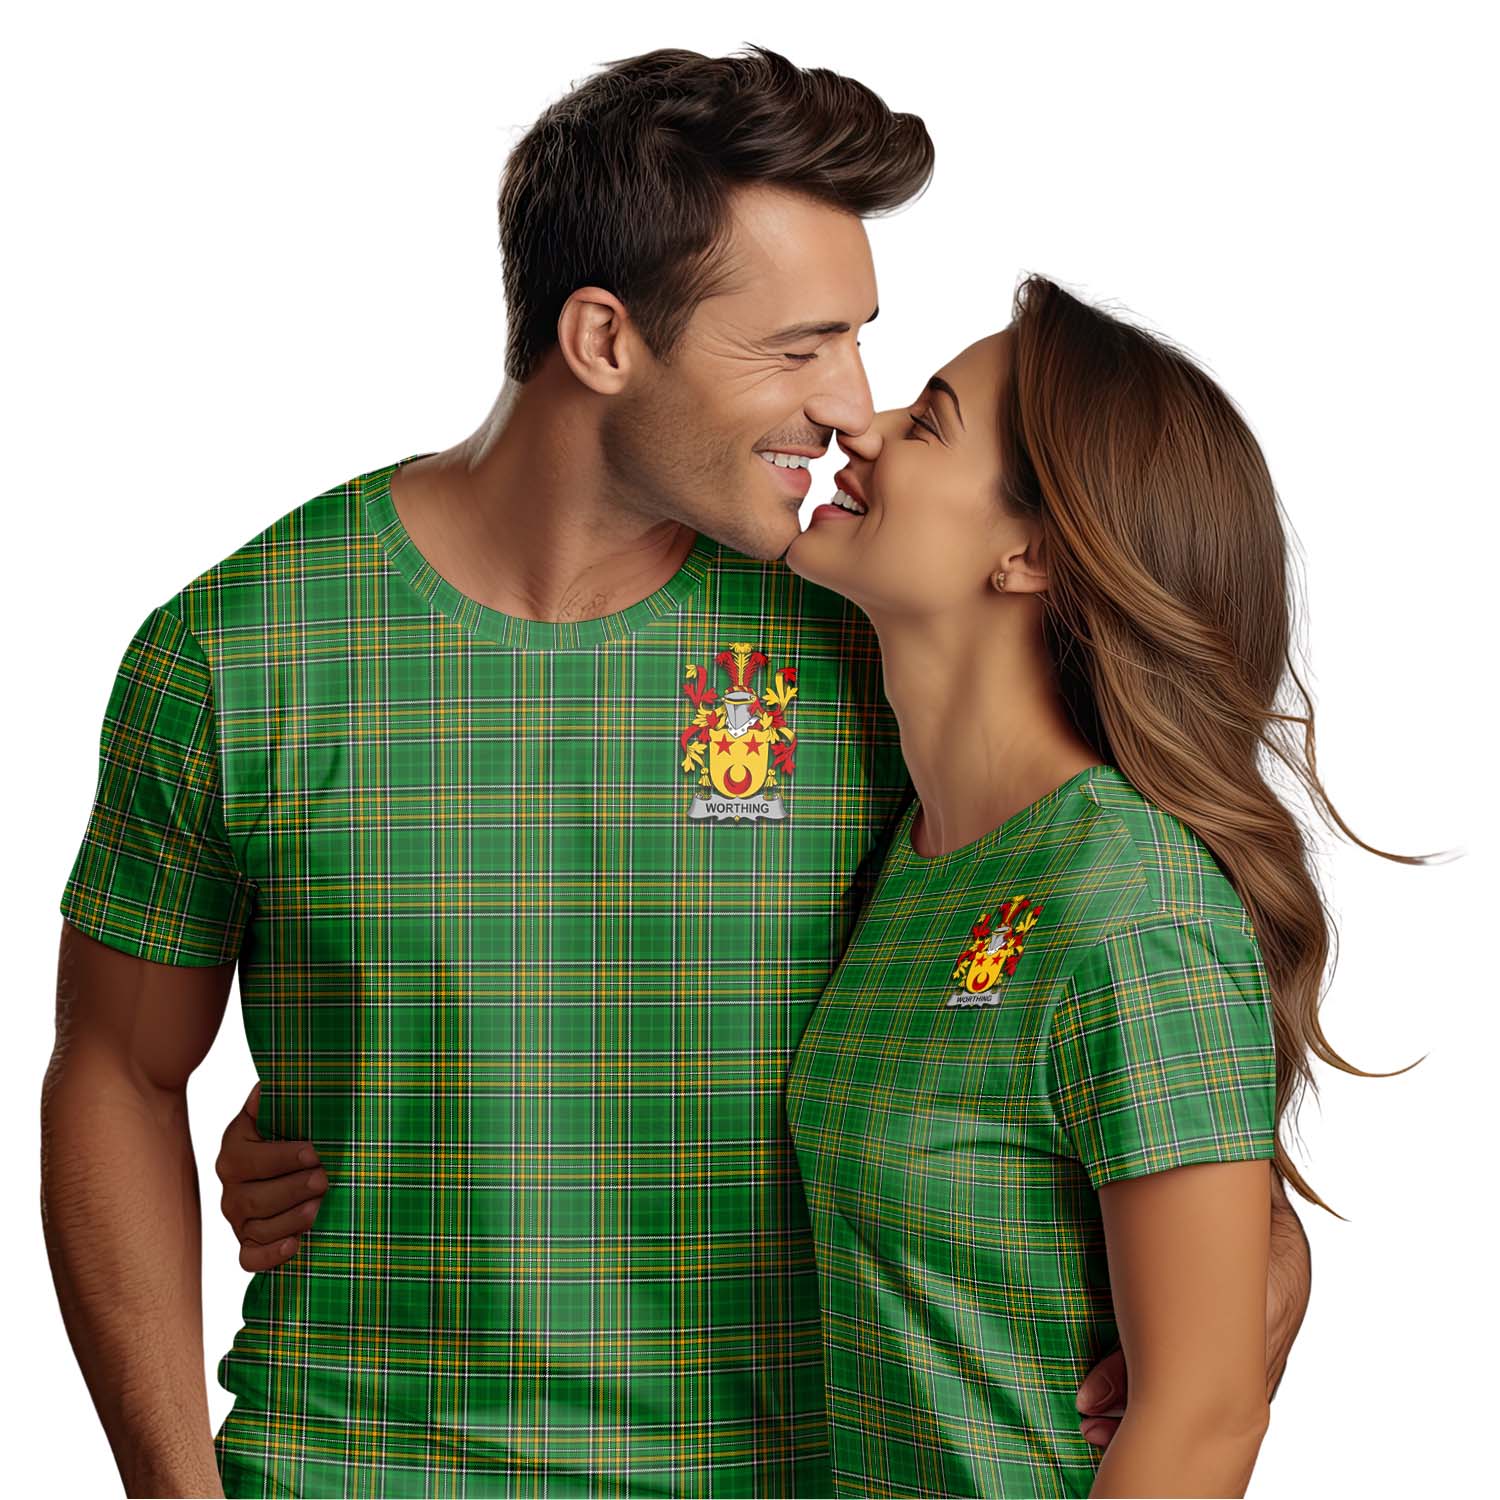 Tartan Vibes Clothing Worthing Ireland Clan Tartan T-Shirt with Family Seal